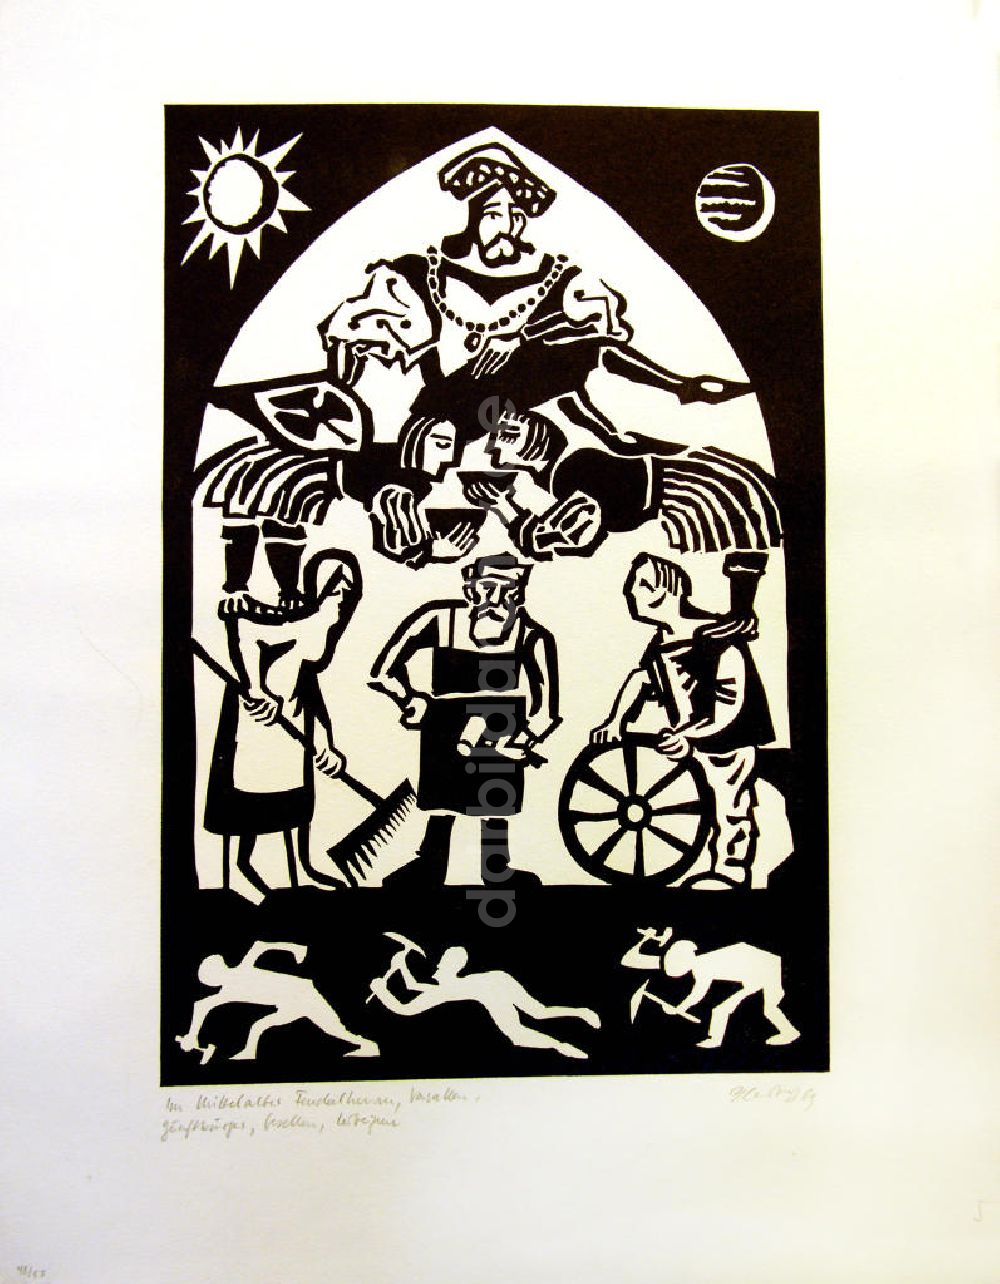 Berlin: Grafik von Herbert Sandberg Motiv 5 aus dem Zyklus Bilder zum Kommunistischen Manifest aus dem Jahr 1969